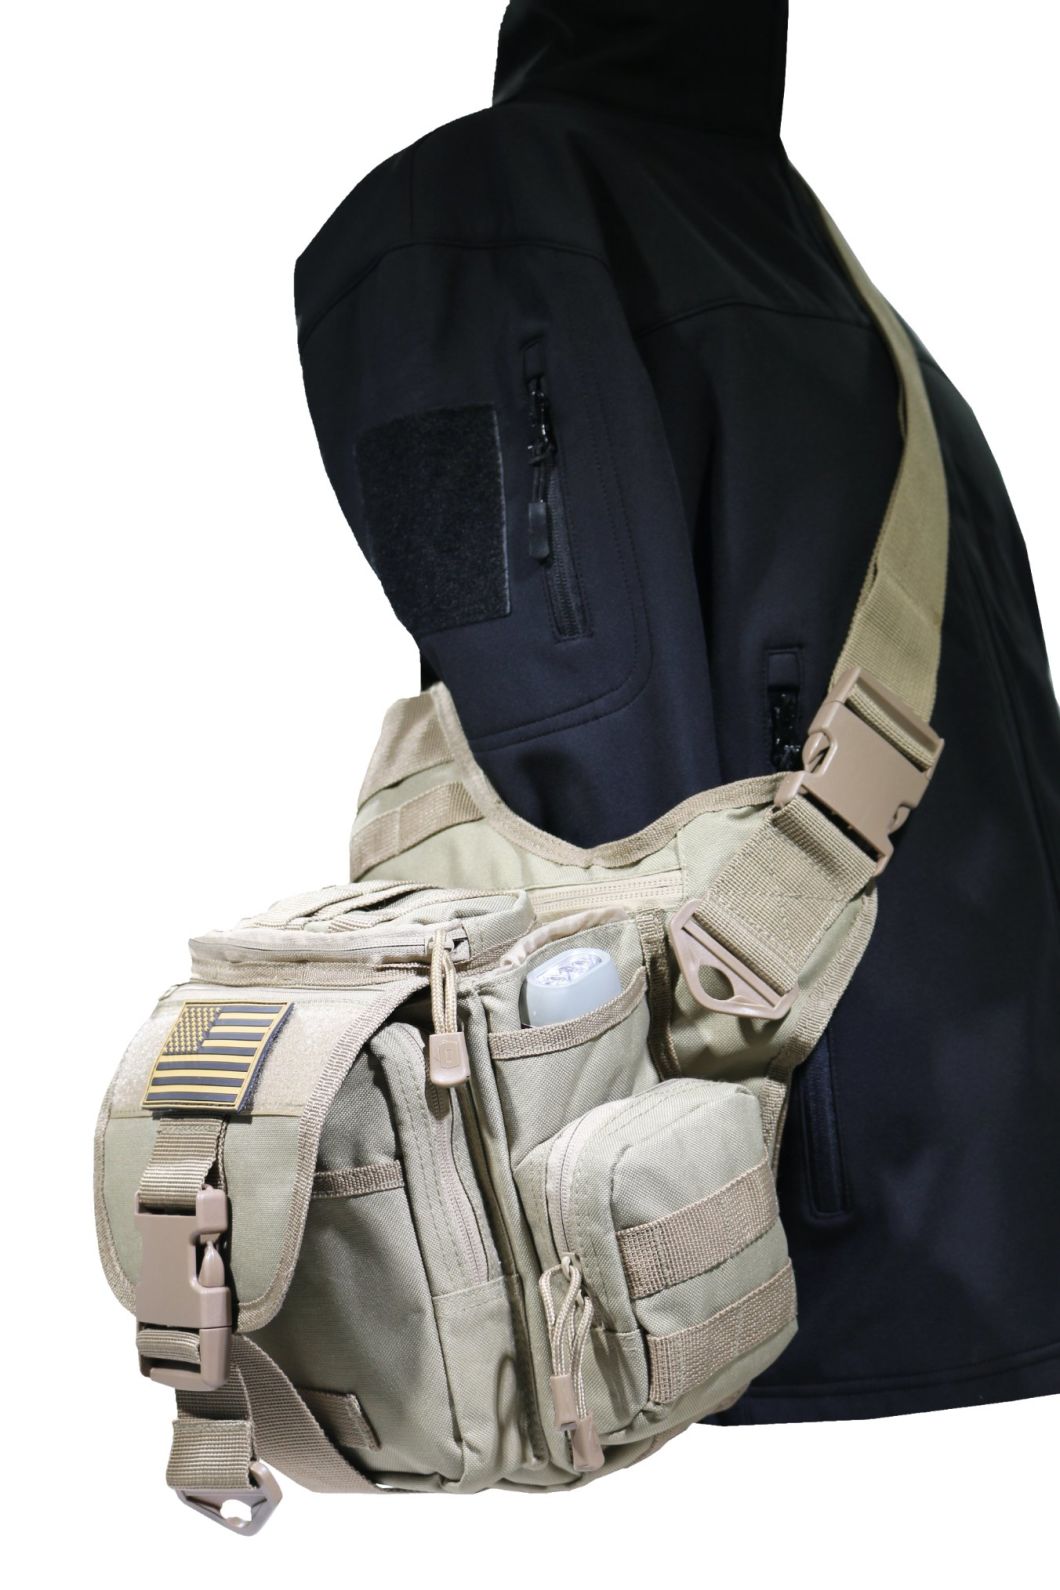 Military Tactical Waist Bag Shoulder Sling Bag